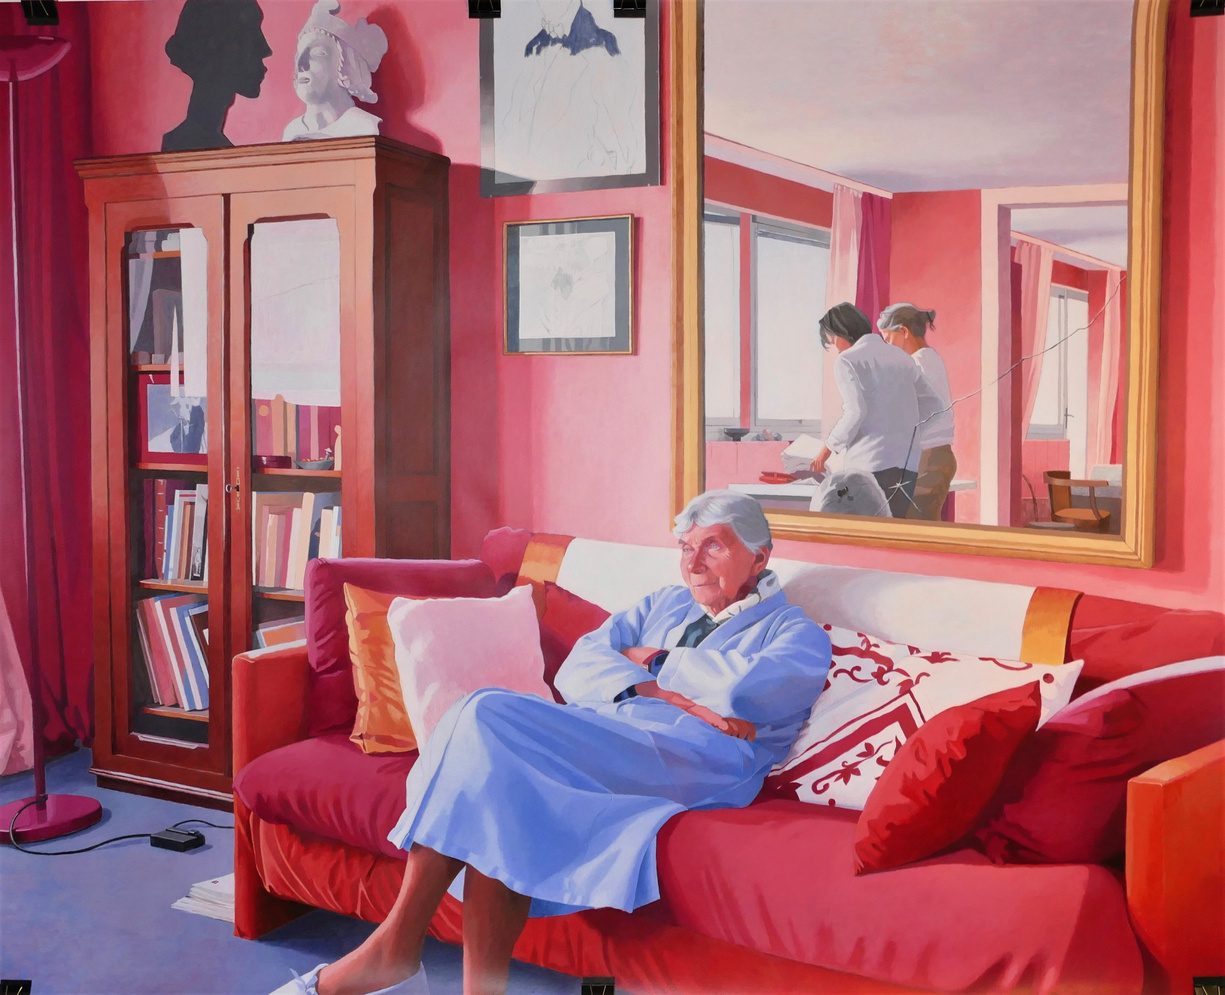 Antoine Denain, Grand-mère s’interrogeant, acrylique sur toile, 200/160cm, 2021